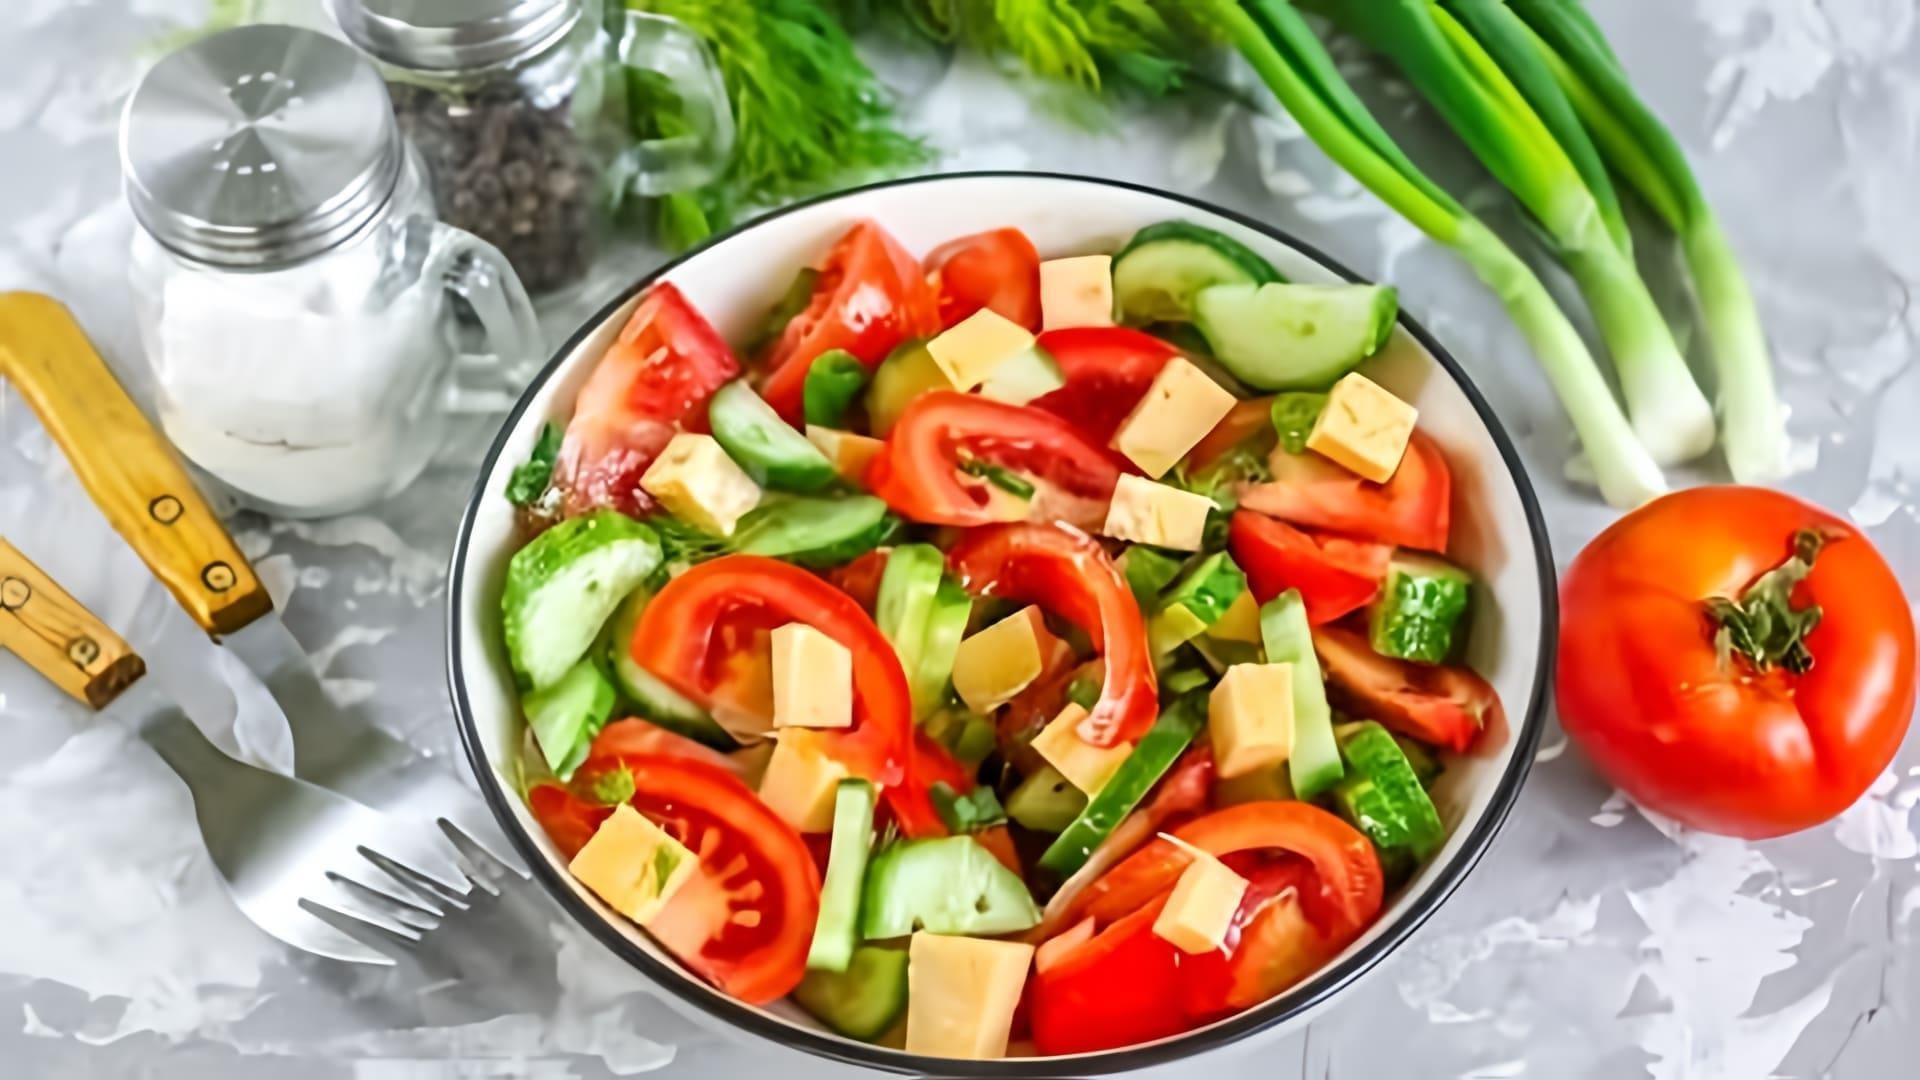 В этом видео демонстрируется рецепт салата из огурцов, помидоров и сыра